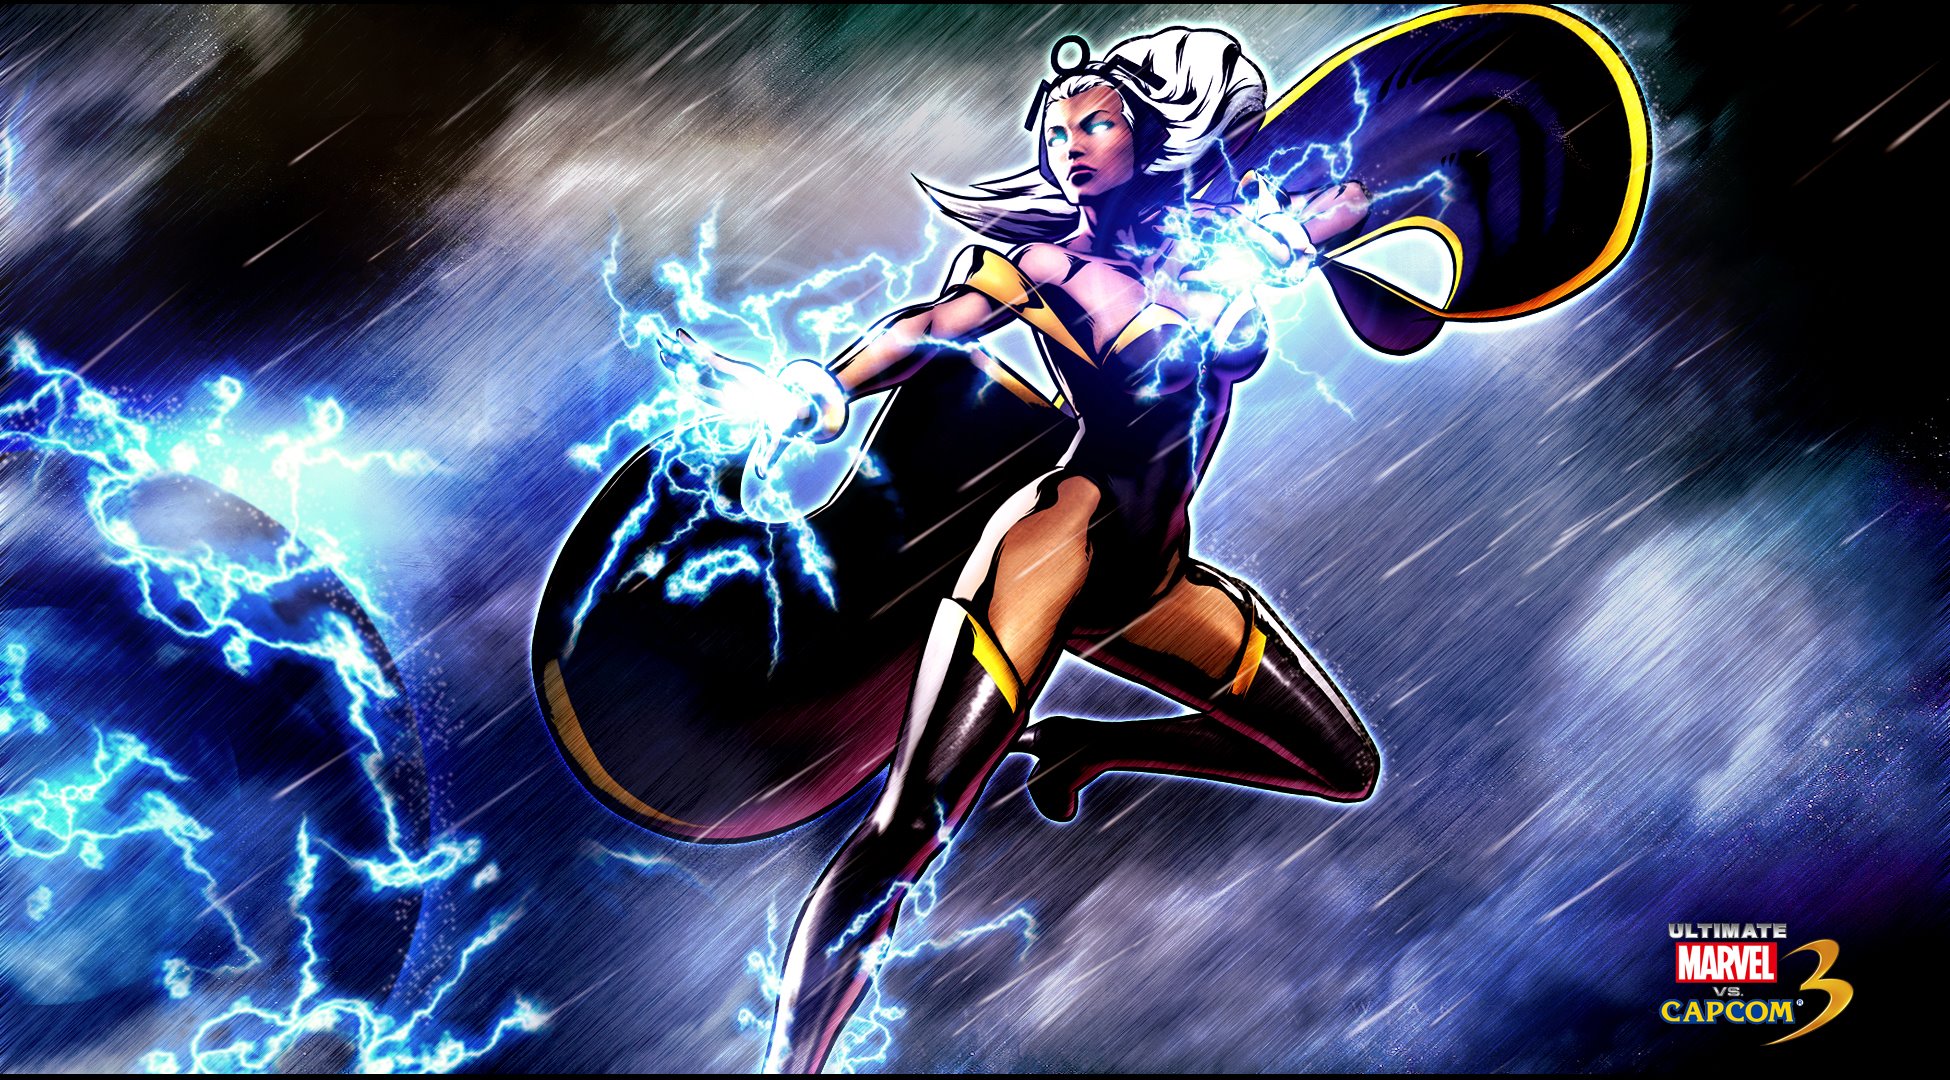 Storm (X-Men / Marvel Vs. Capcom) Art Gallery - Page 2.